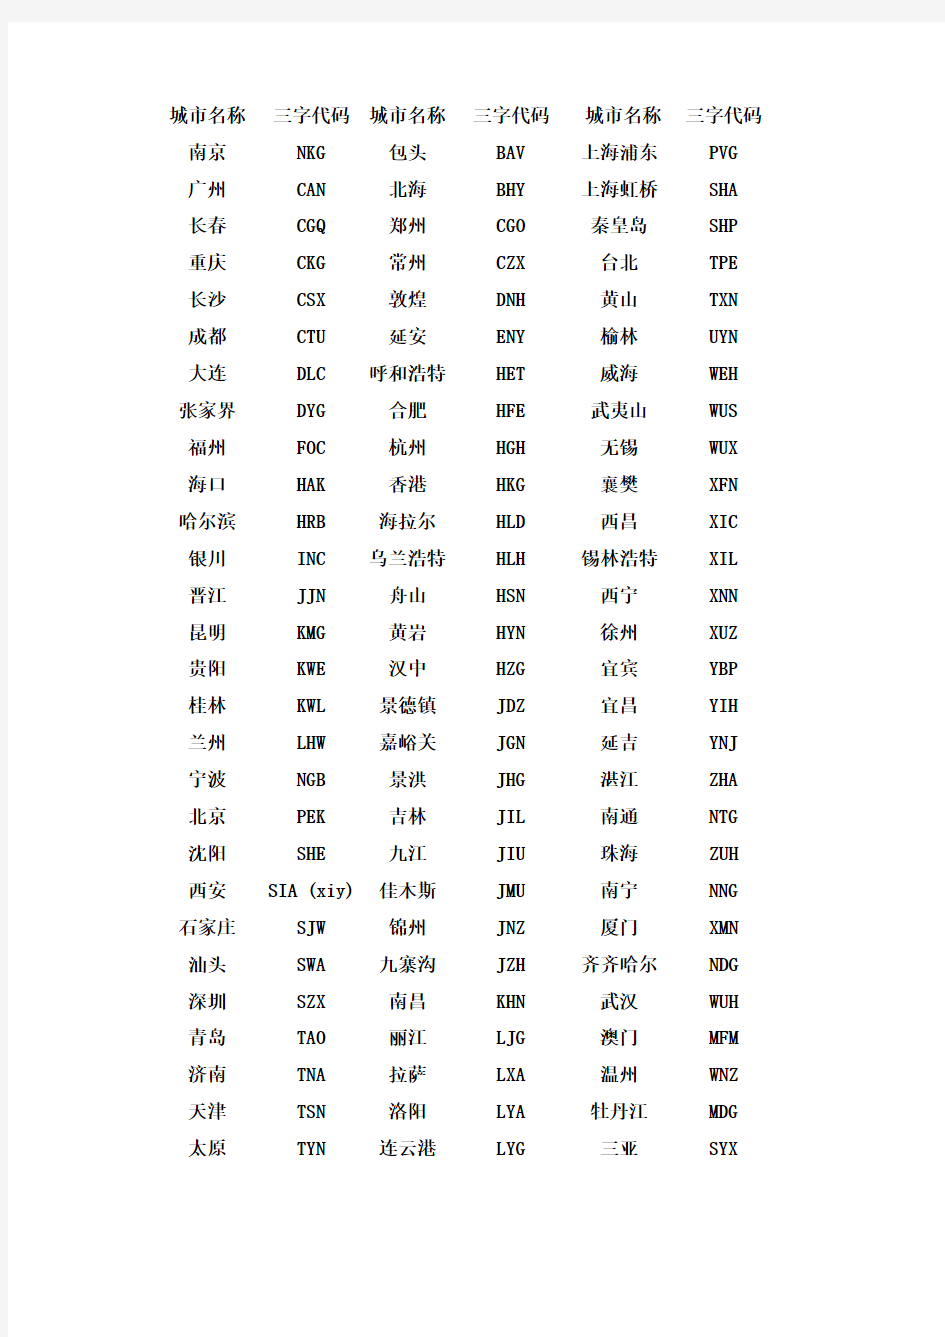 中国城市三字代码